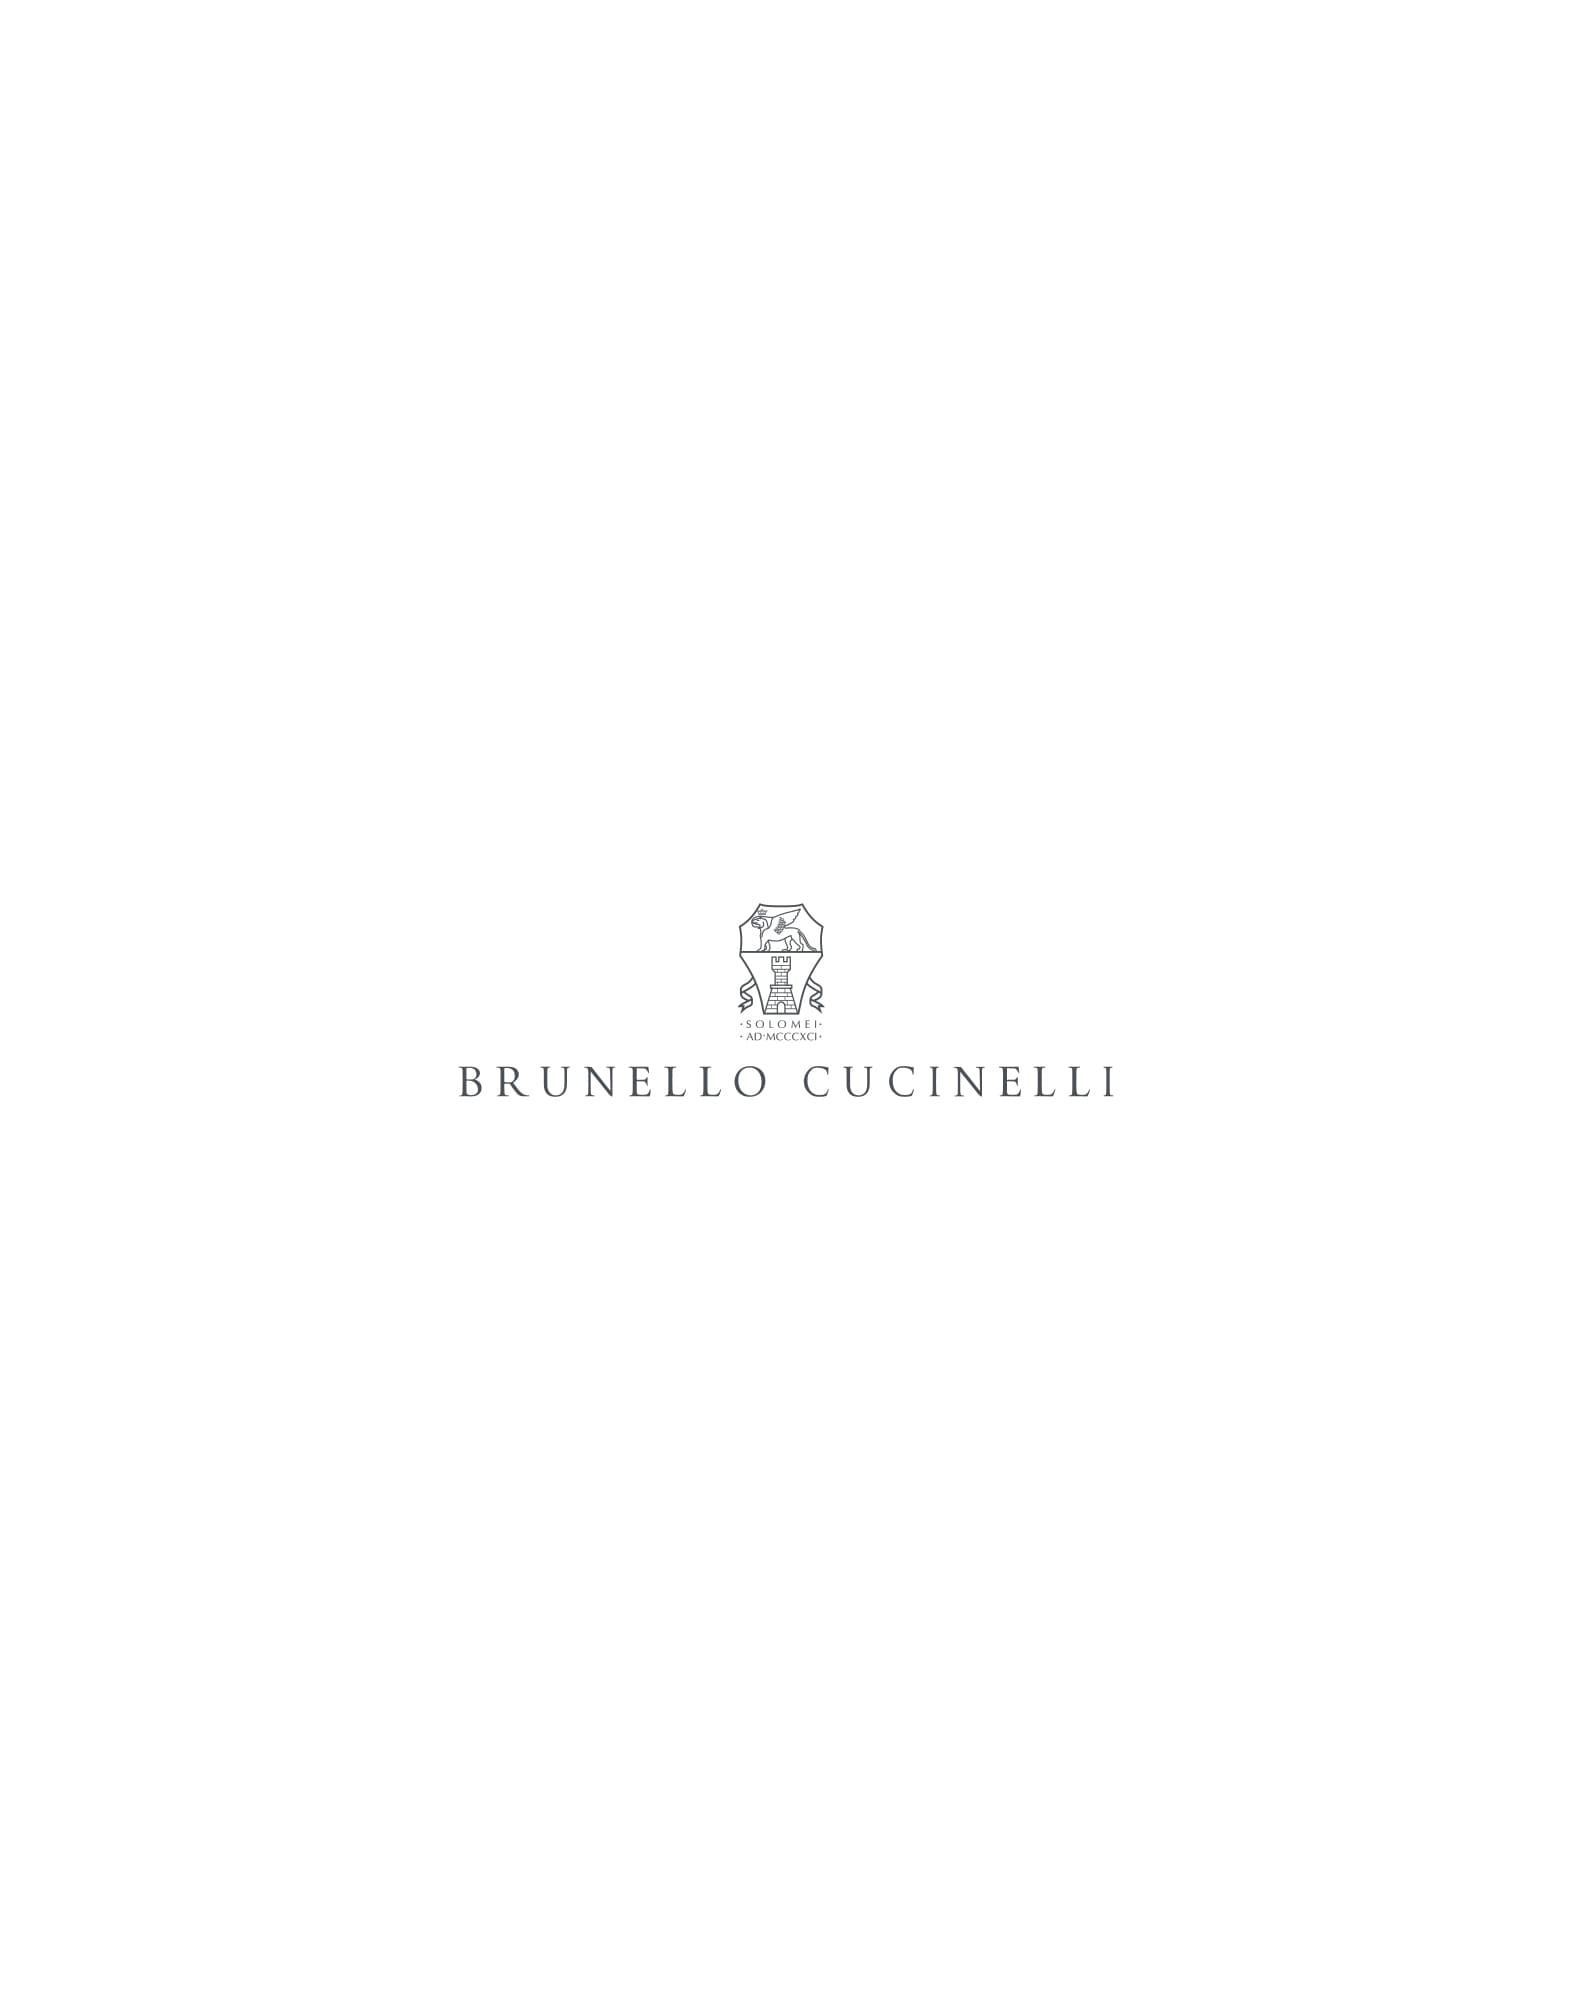 流畅连衣裙 白色 女款 -
                        Brunello Cucinelli 